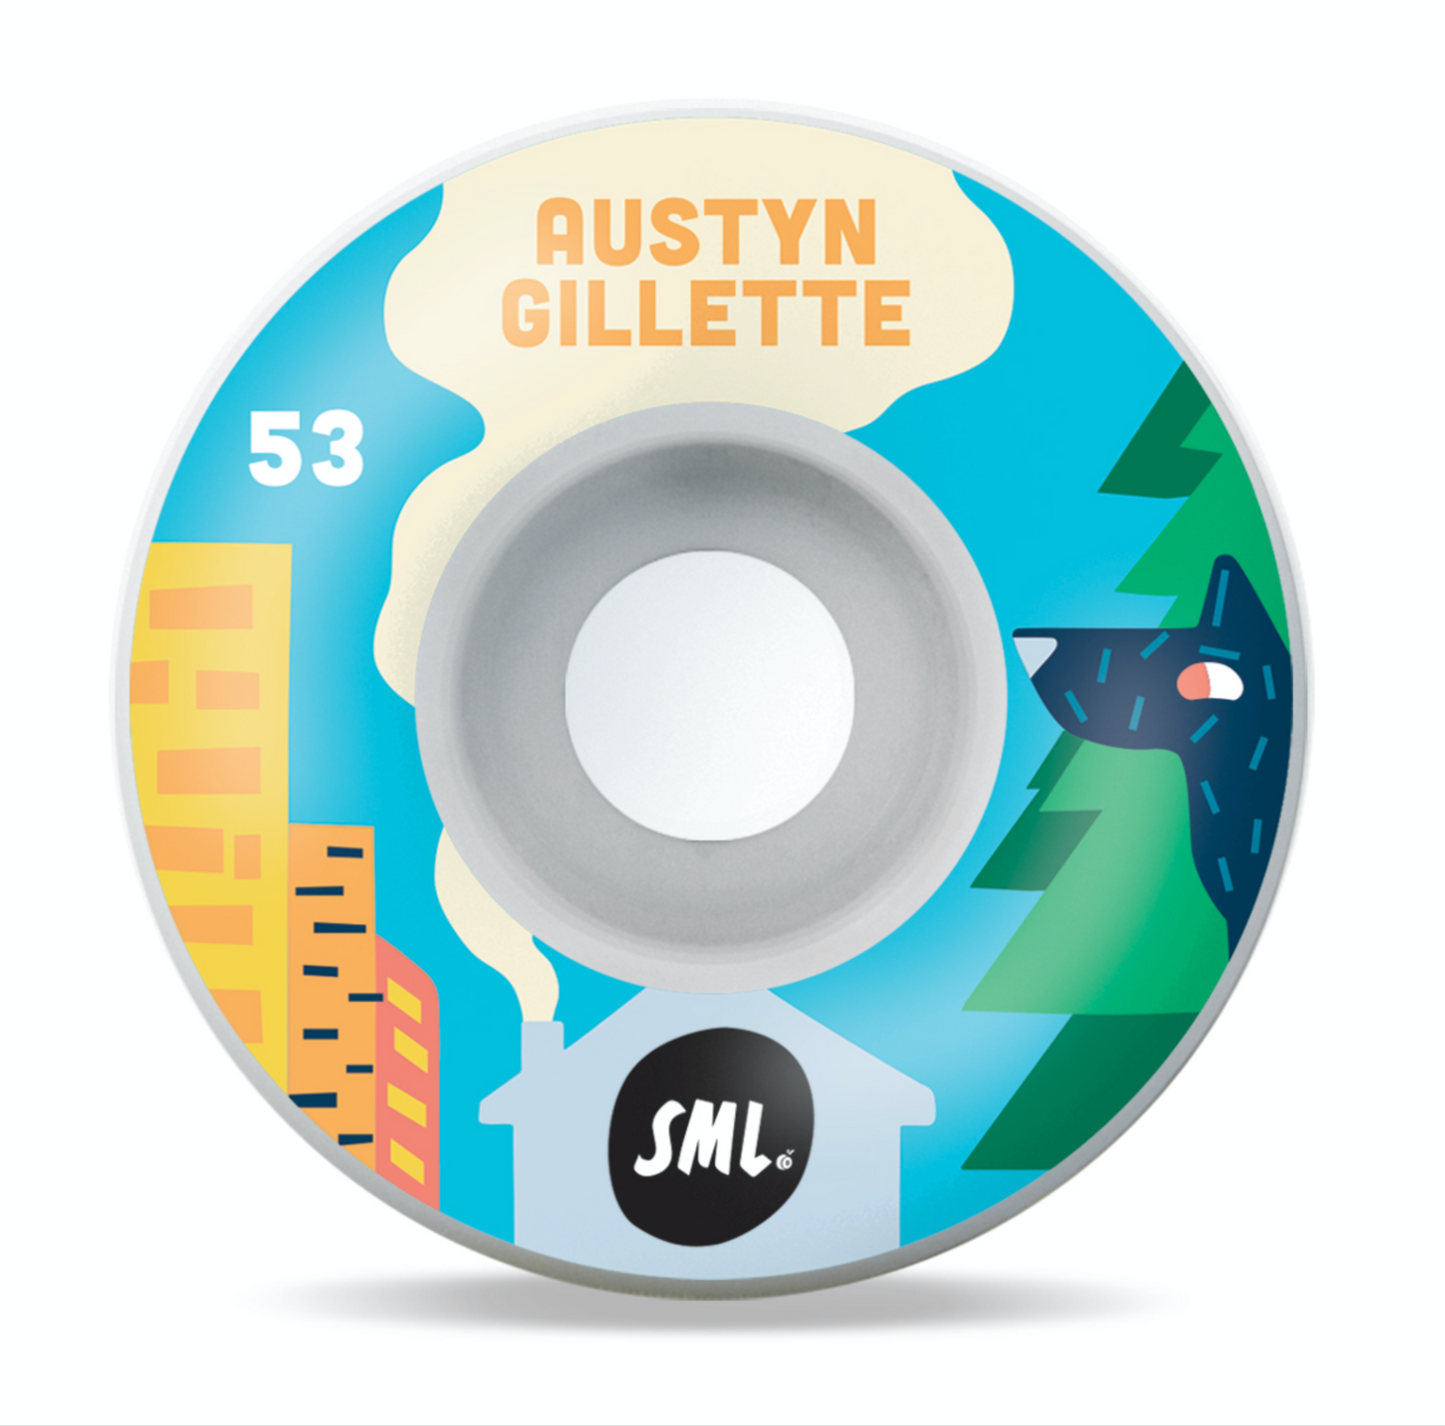 SML Arvo - ล้อ Gillette Austyn 53mm/99a 